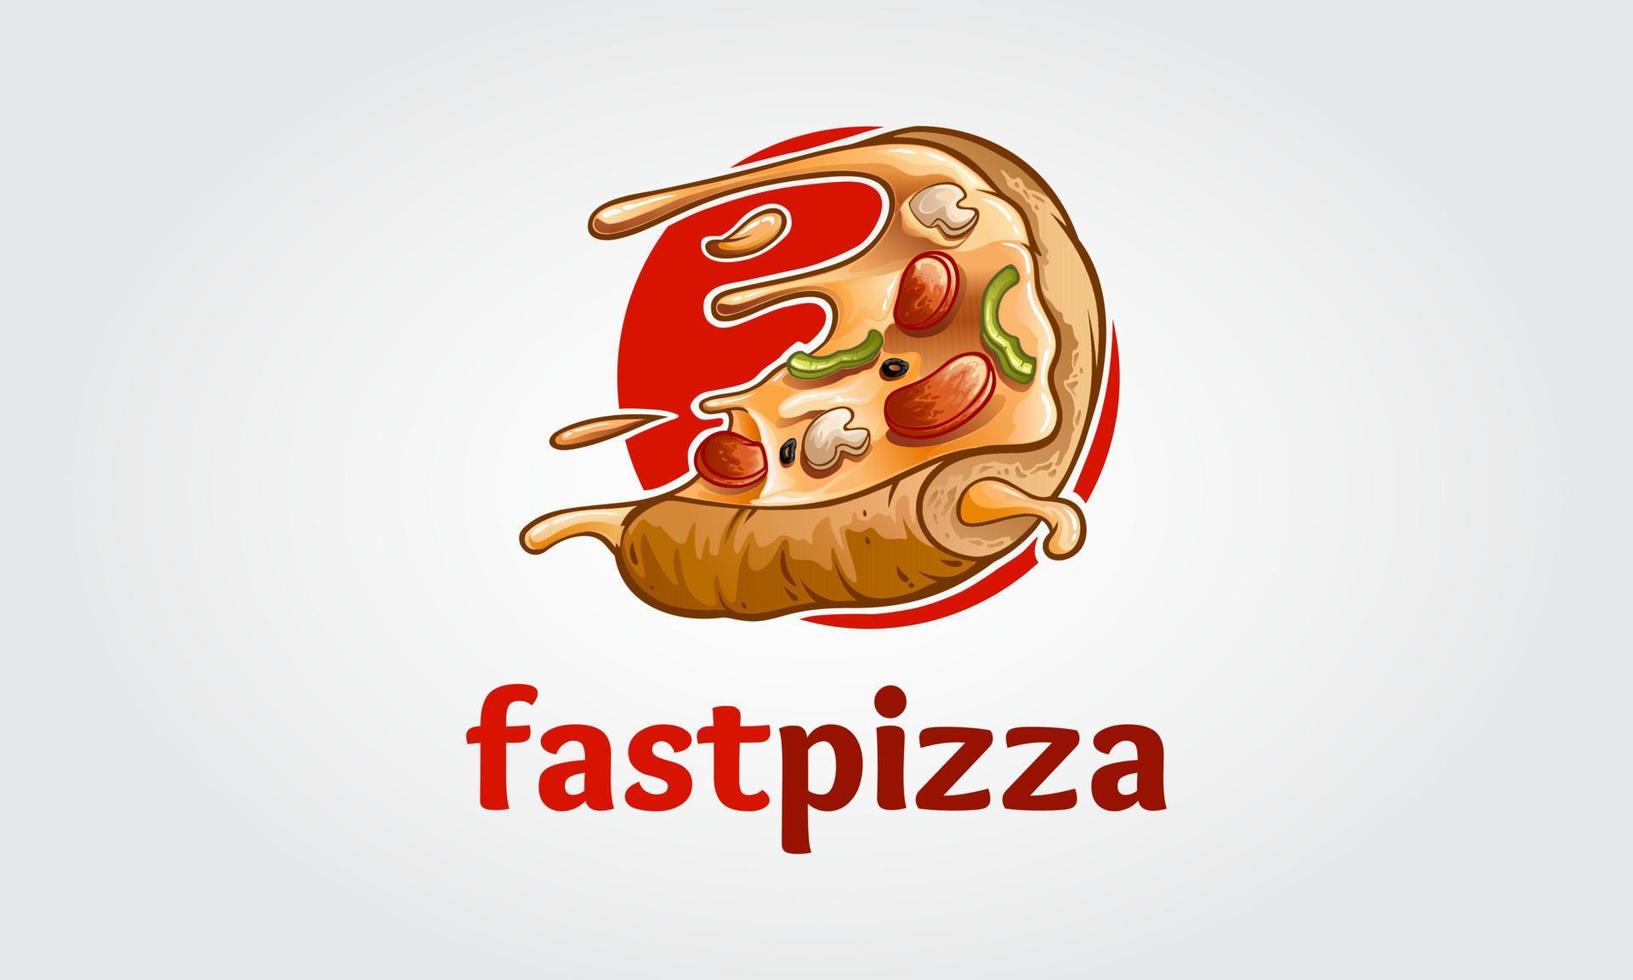 cartone animato di logo vettoriale pizza veloce. questo logo è altamente adatto a qualsiasi ristorante legato alla pizza, fast food, consegna a domicilio, trattoria, bistrot, catering e attività legate al cibo italiano.